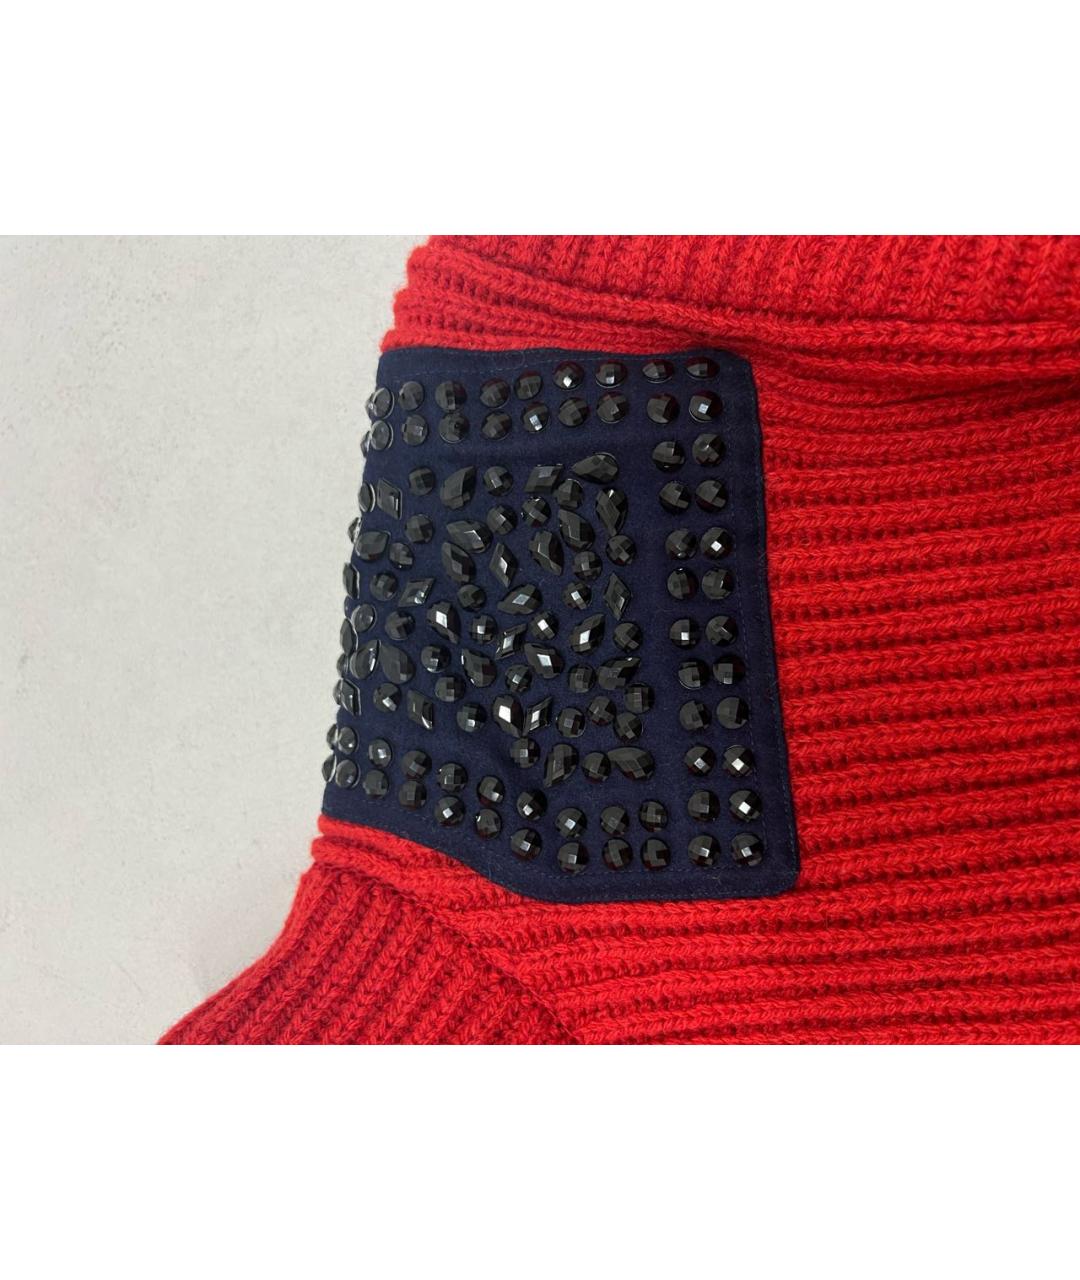 KOLOR Красный шерстяной джемпер / свитер, фото 4